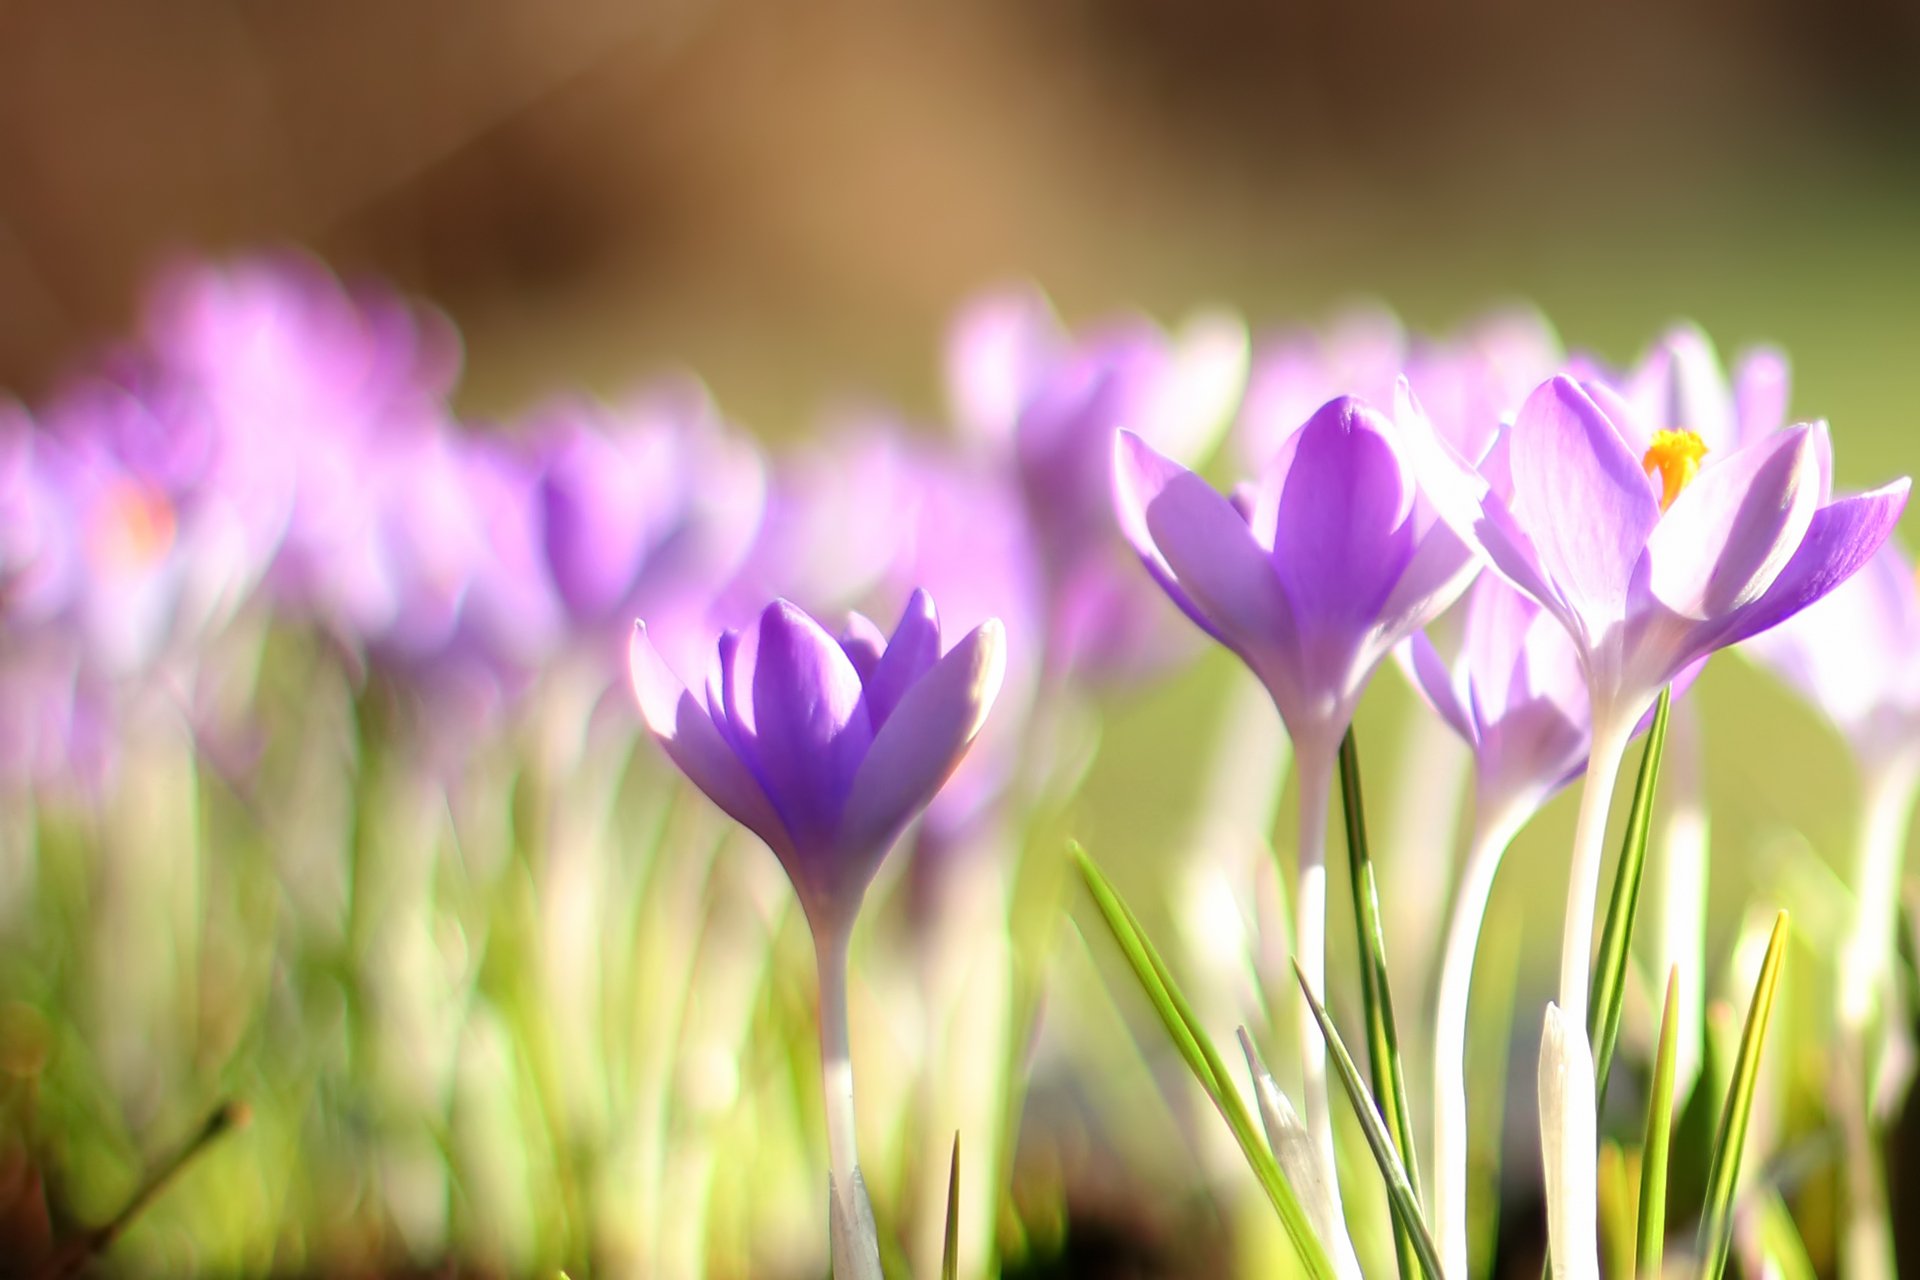 Обои на экран подснежники. Крокус фиолетовый первоцвет. Первоцветы (подснежники, крокусы, гиацинты).. Весенние цветы первоцветы Крокус. Весенние первоцветы фиолетовые.